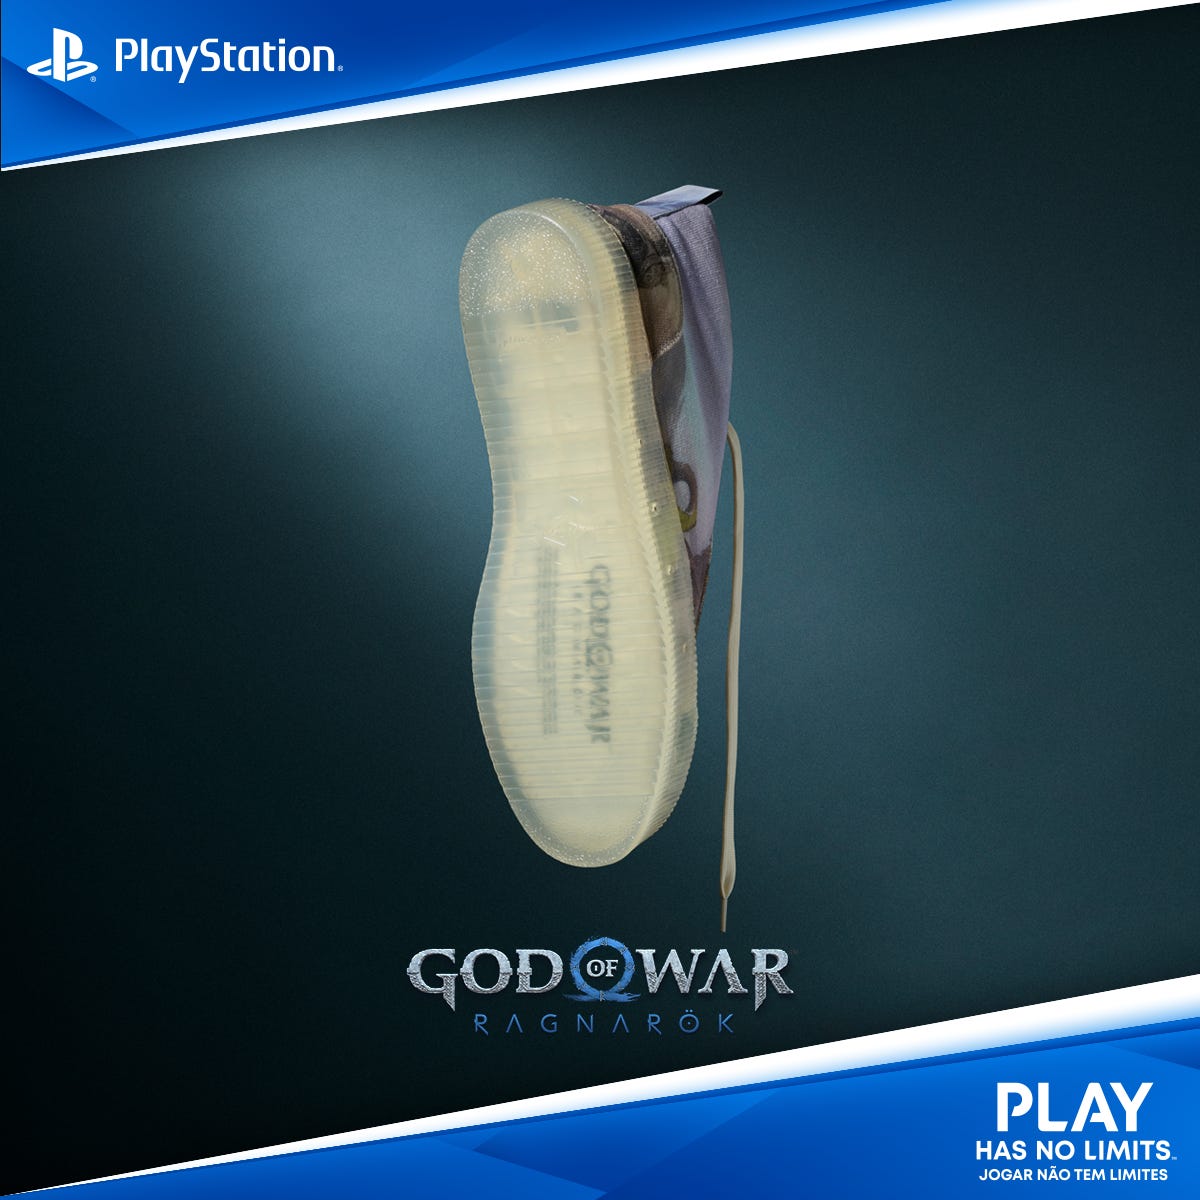 God of War Ragnarök - PS4 · SONY · El Corte Inglés